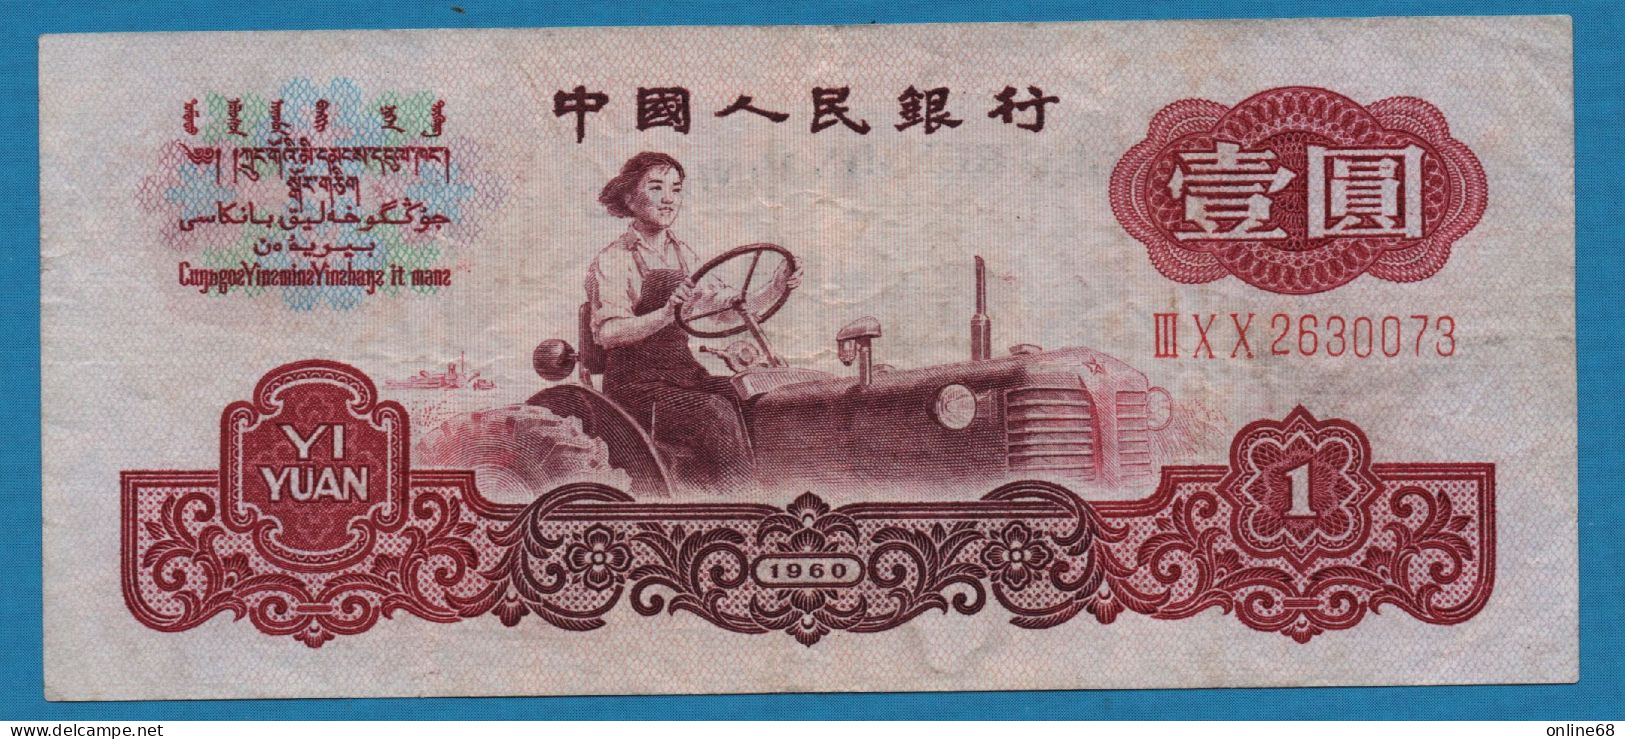 CHINA 1 YUAN 1960 # III X X 2630073 P# 874a Miss Liang Jun - China